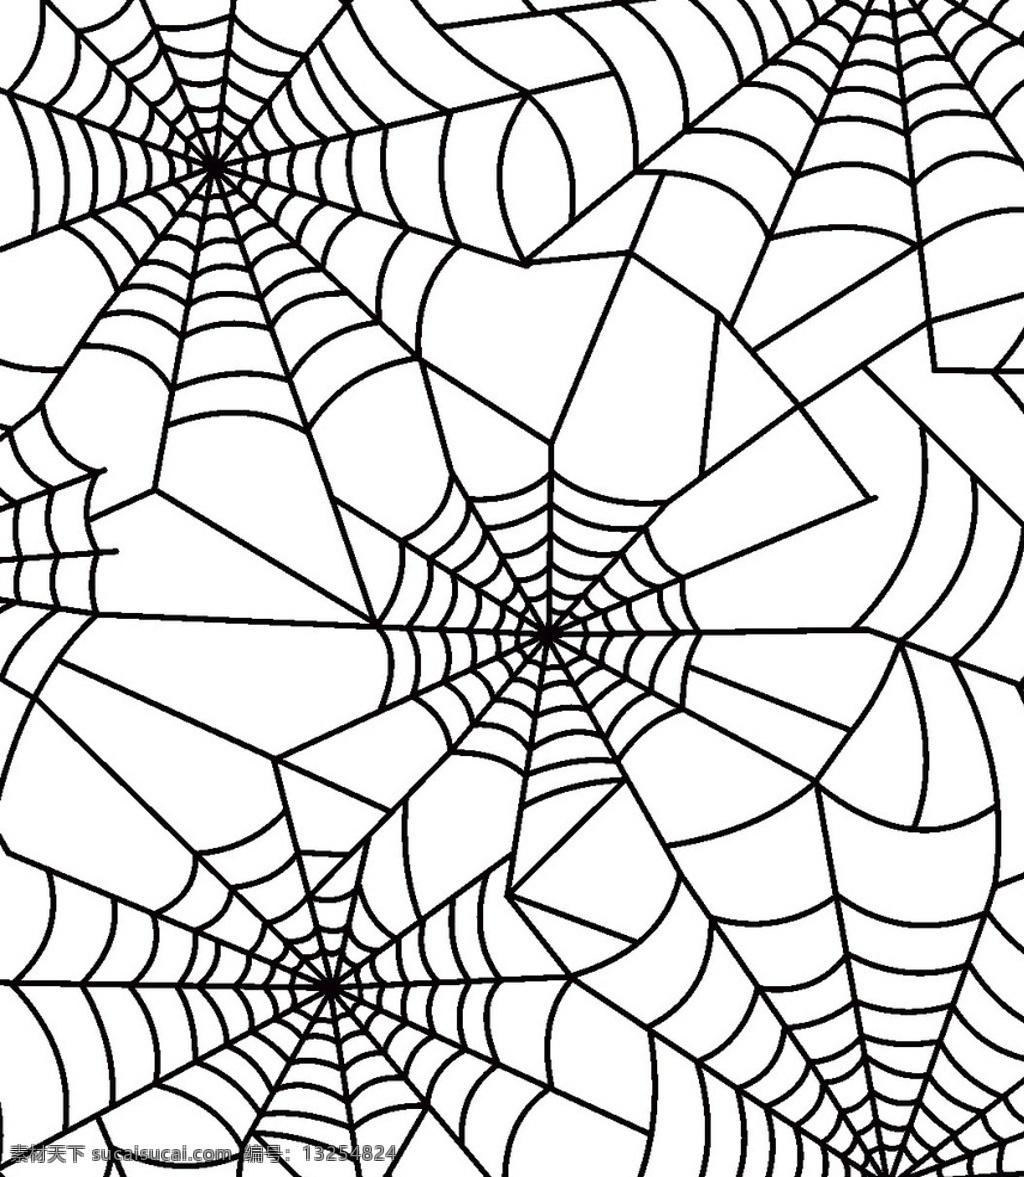 蜘蛛网 独特 创意 简约 流行 底纹边框 背景底纹